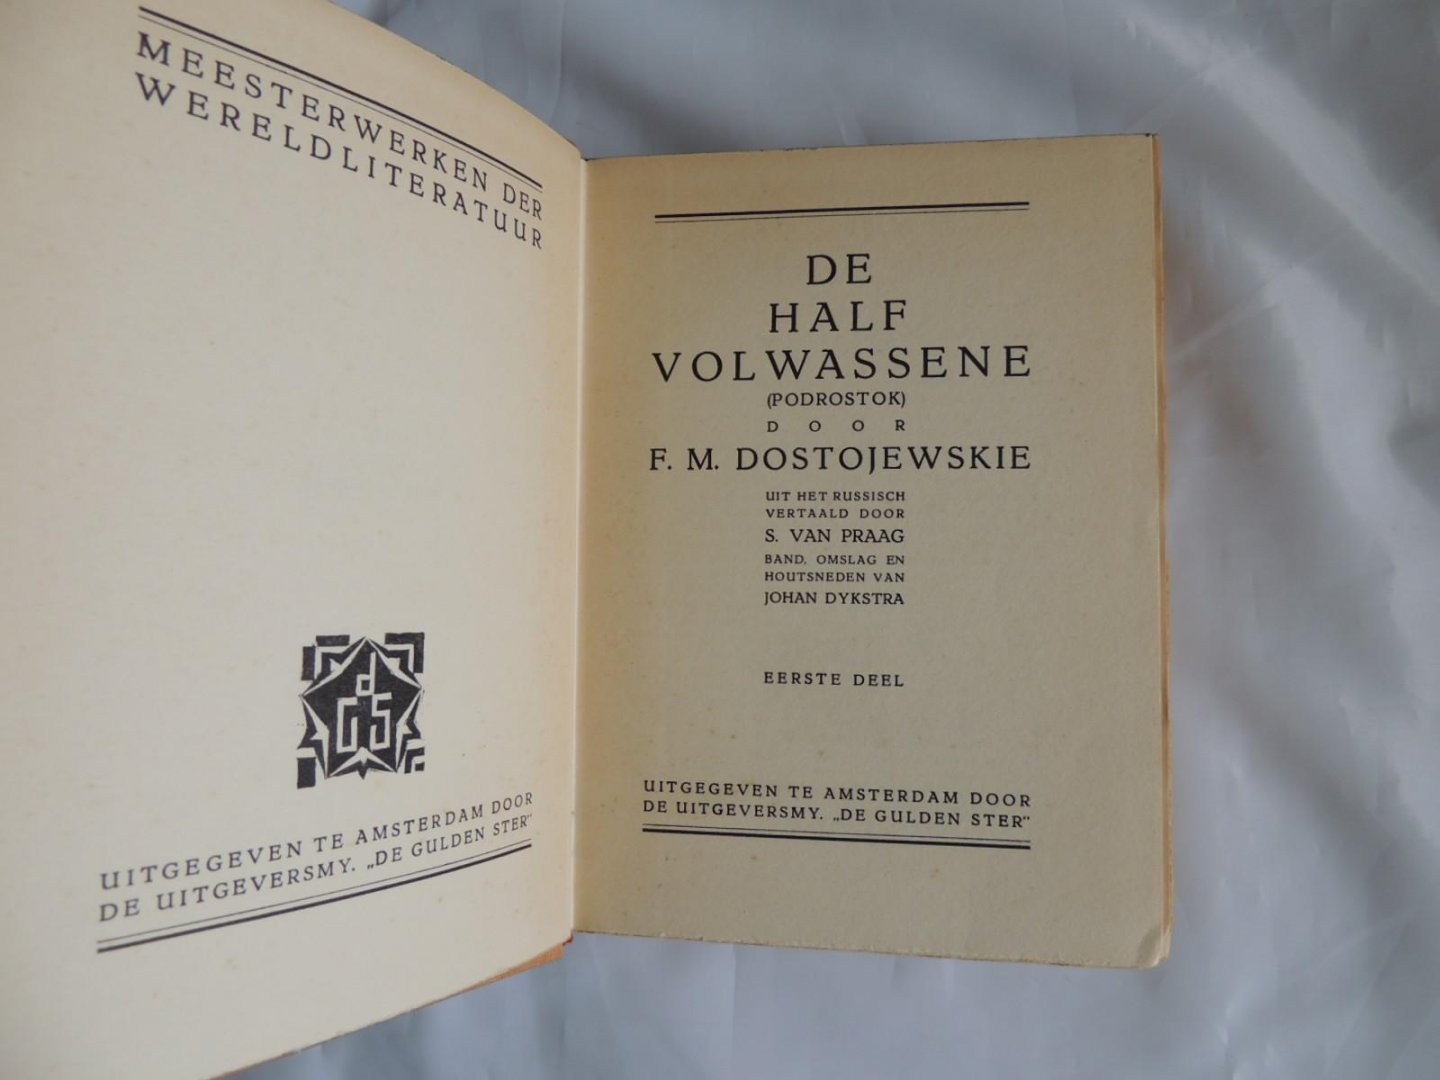 Dostojewskie, F.M. - Vert. door S. van Praag - De Halfvolwassene (Podrostok) Vert. door S. van Praag, band omslag en houtsneden van Johan Dykstra